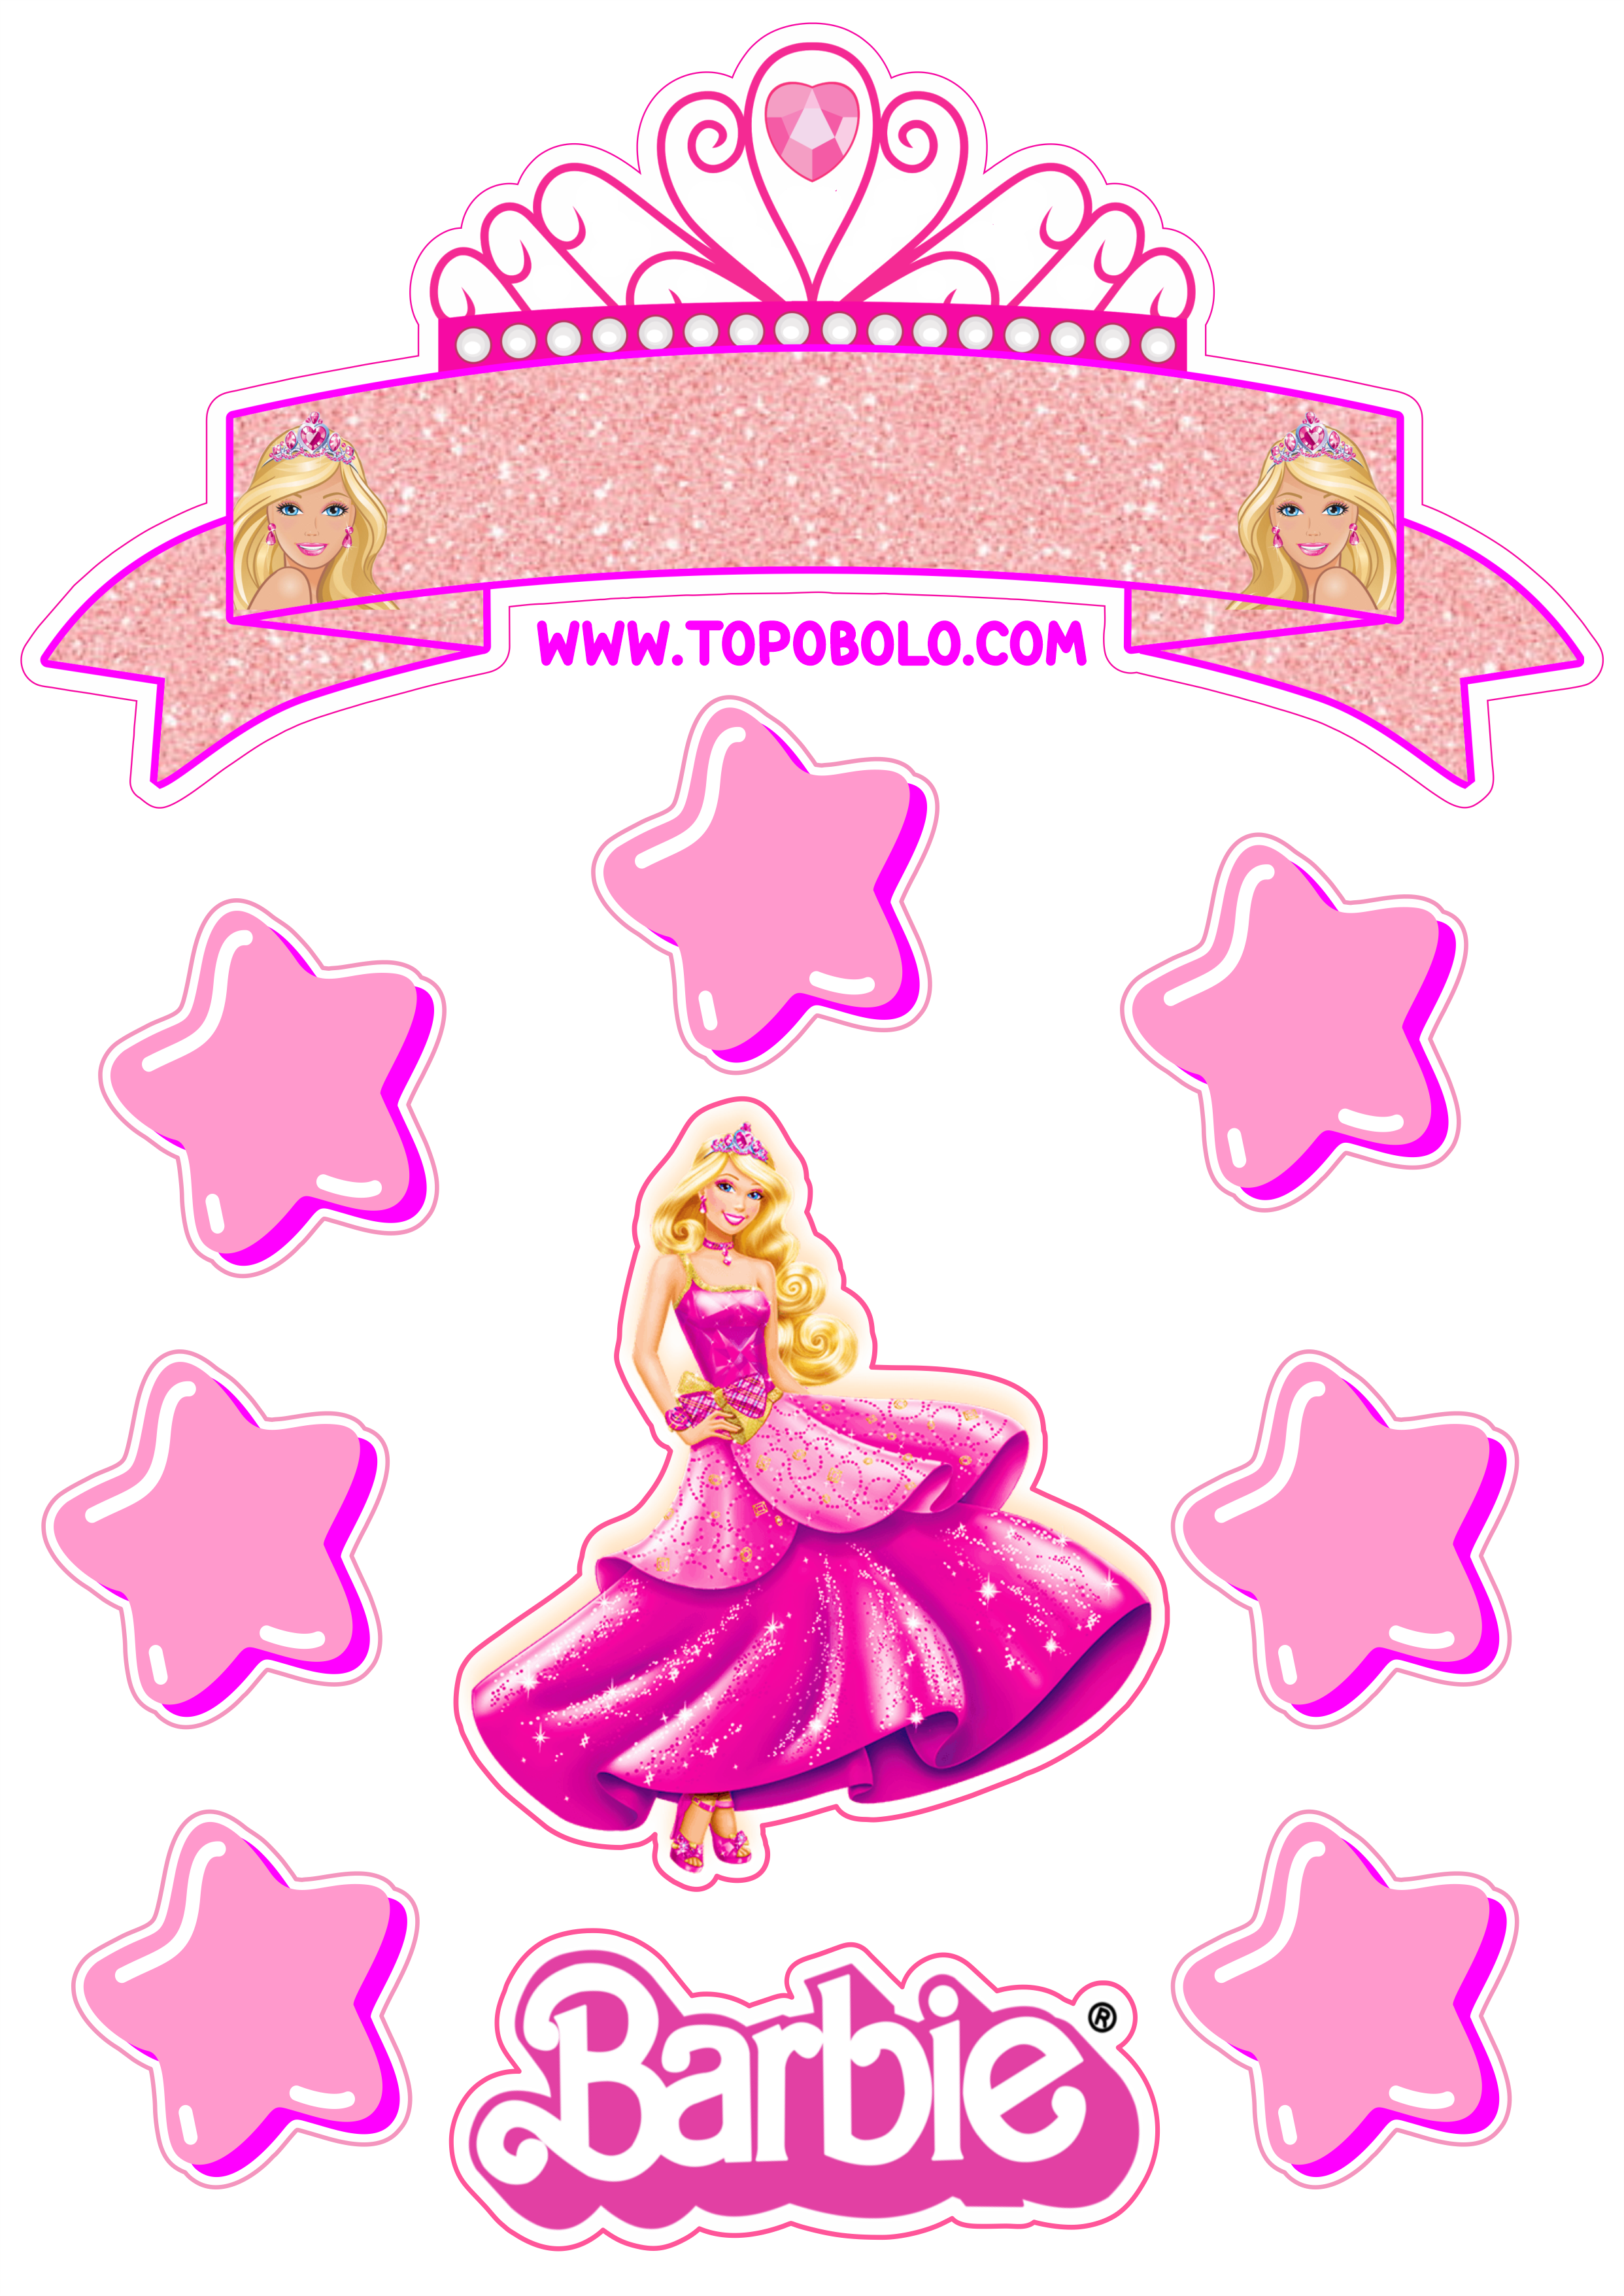 Topo de bolo para imprimir boneca Barbie festa de aniversário rosa menina png